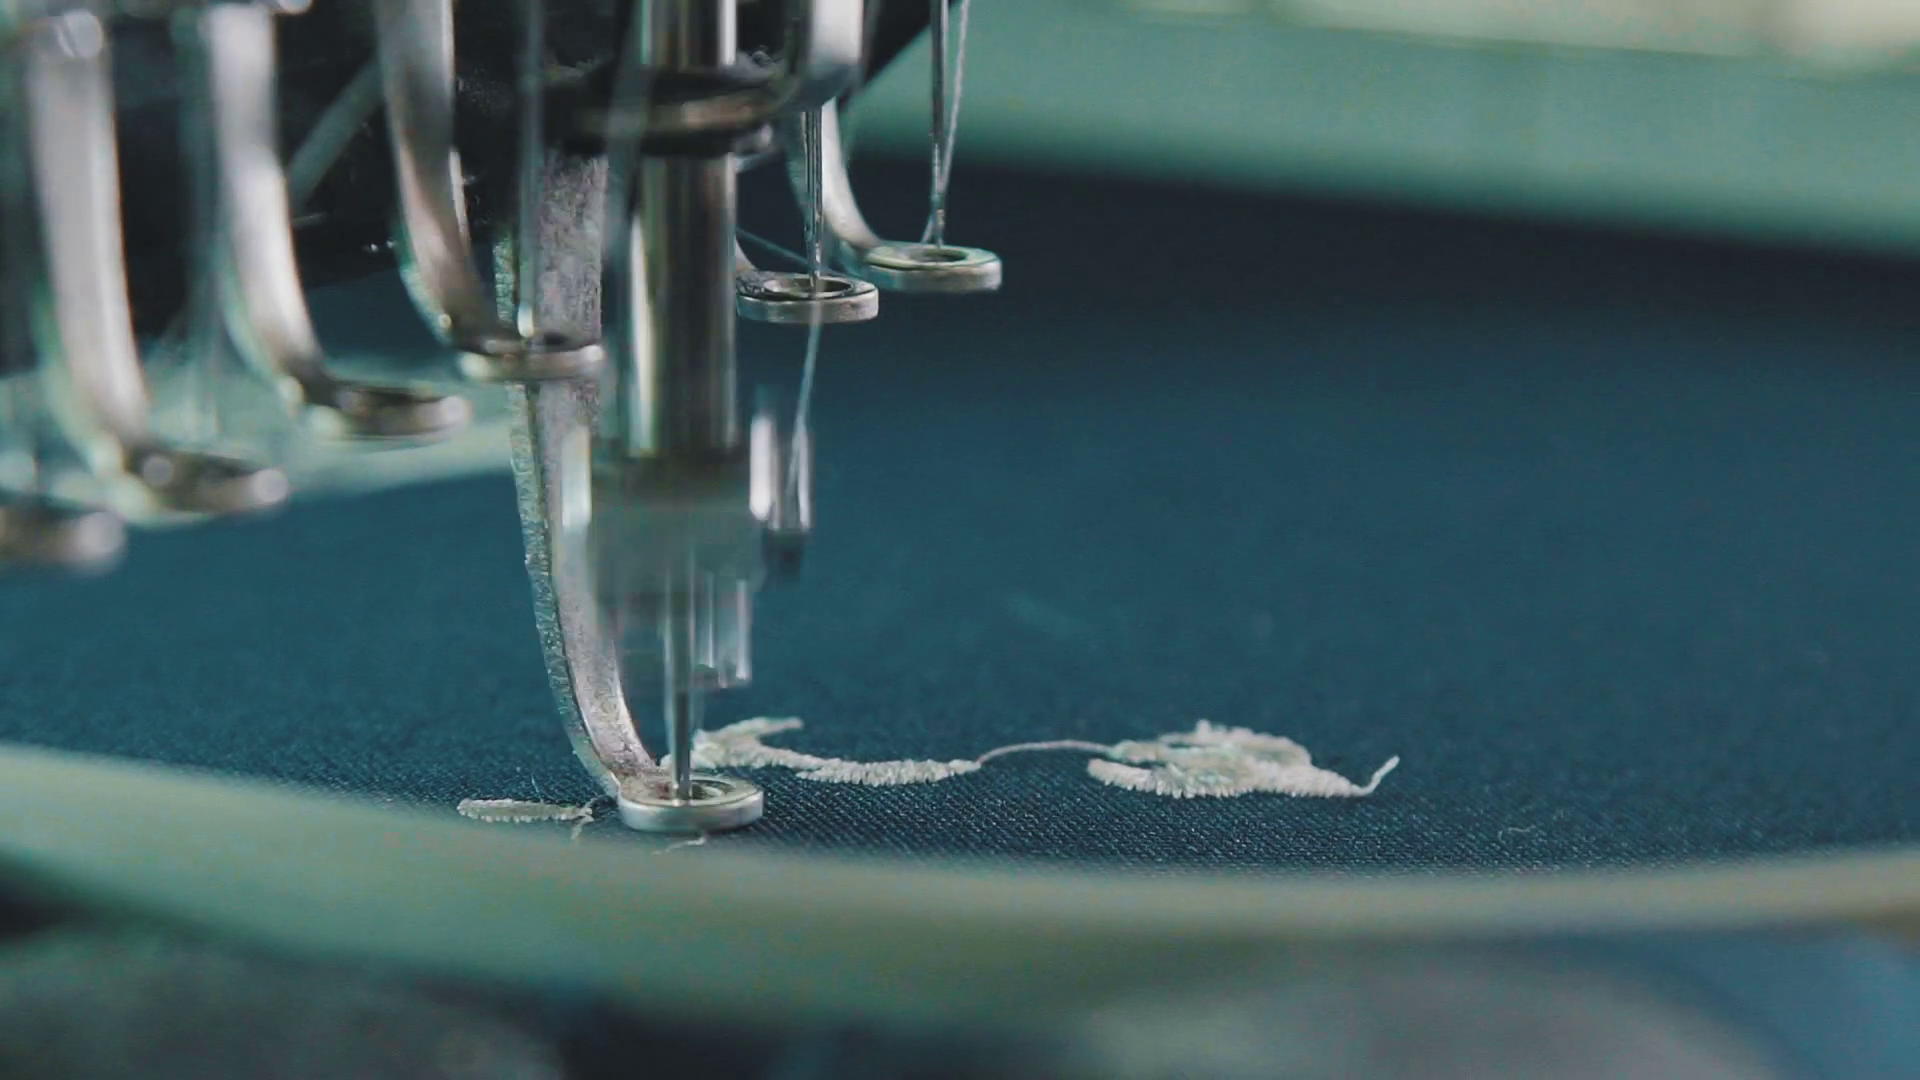 14+] Sewing Machine Wallpapers - WallpaperSafari